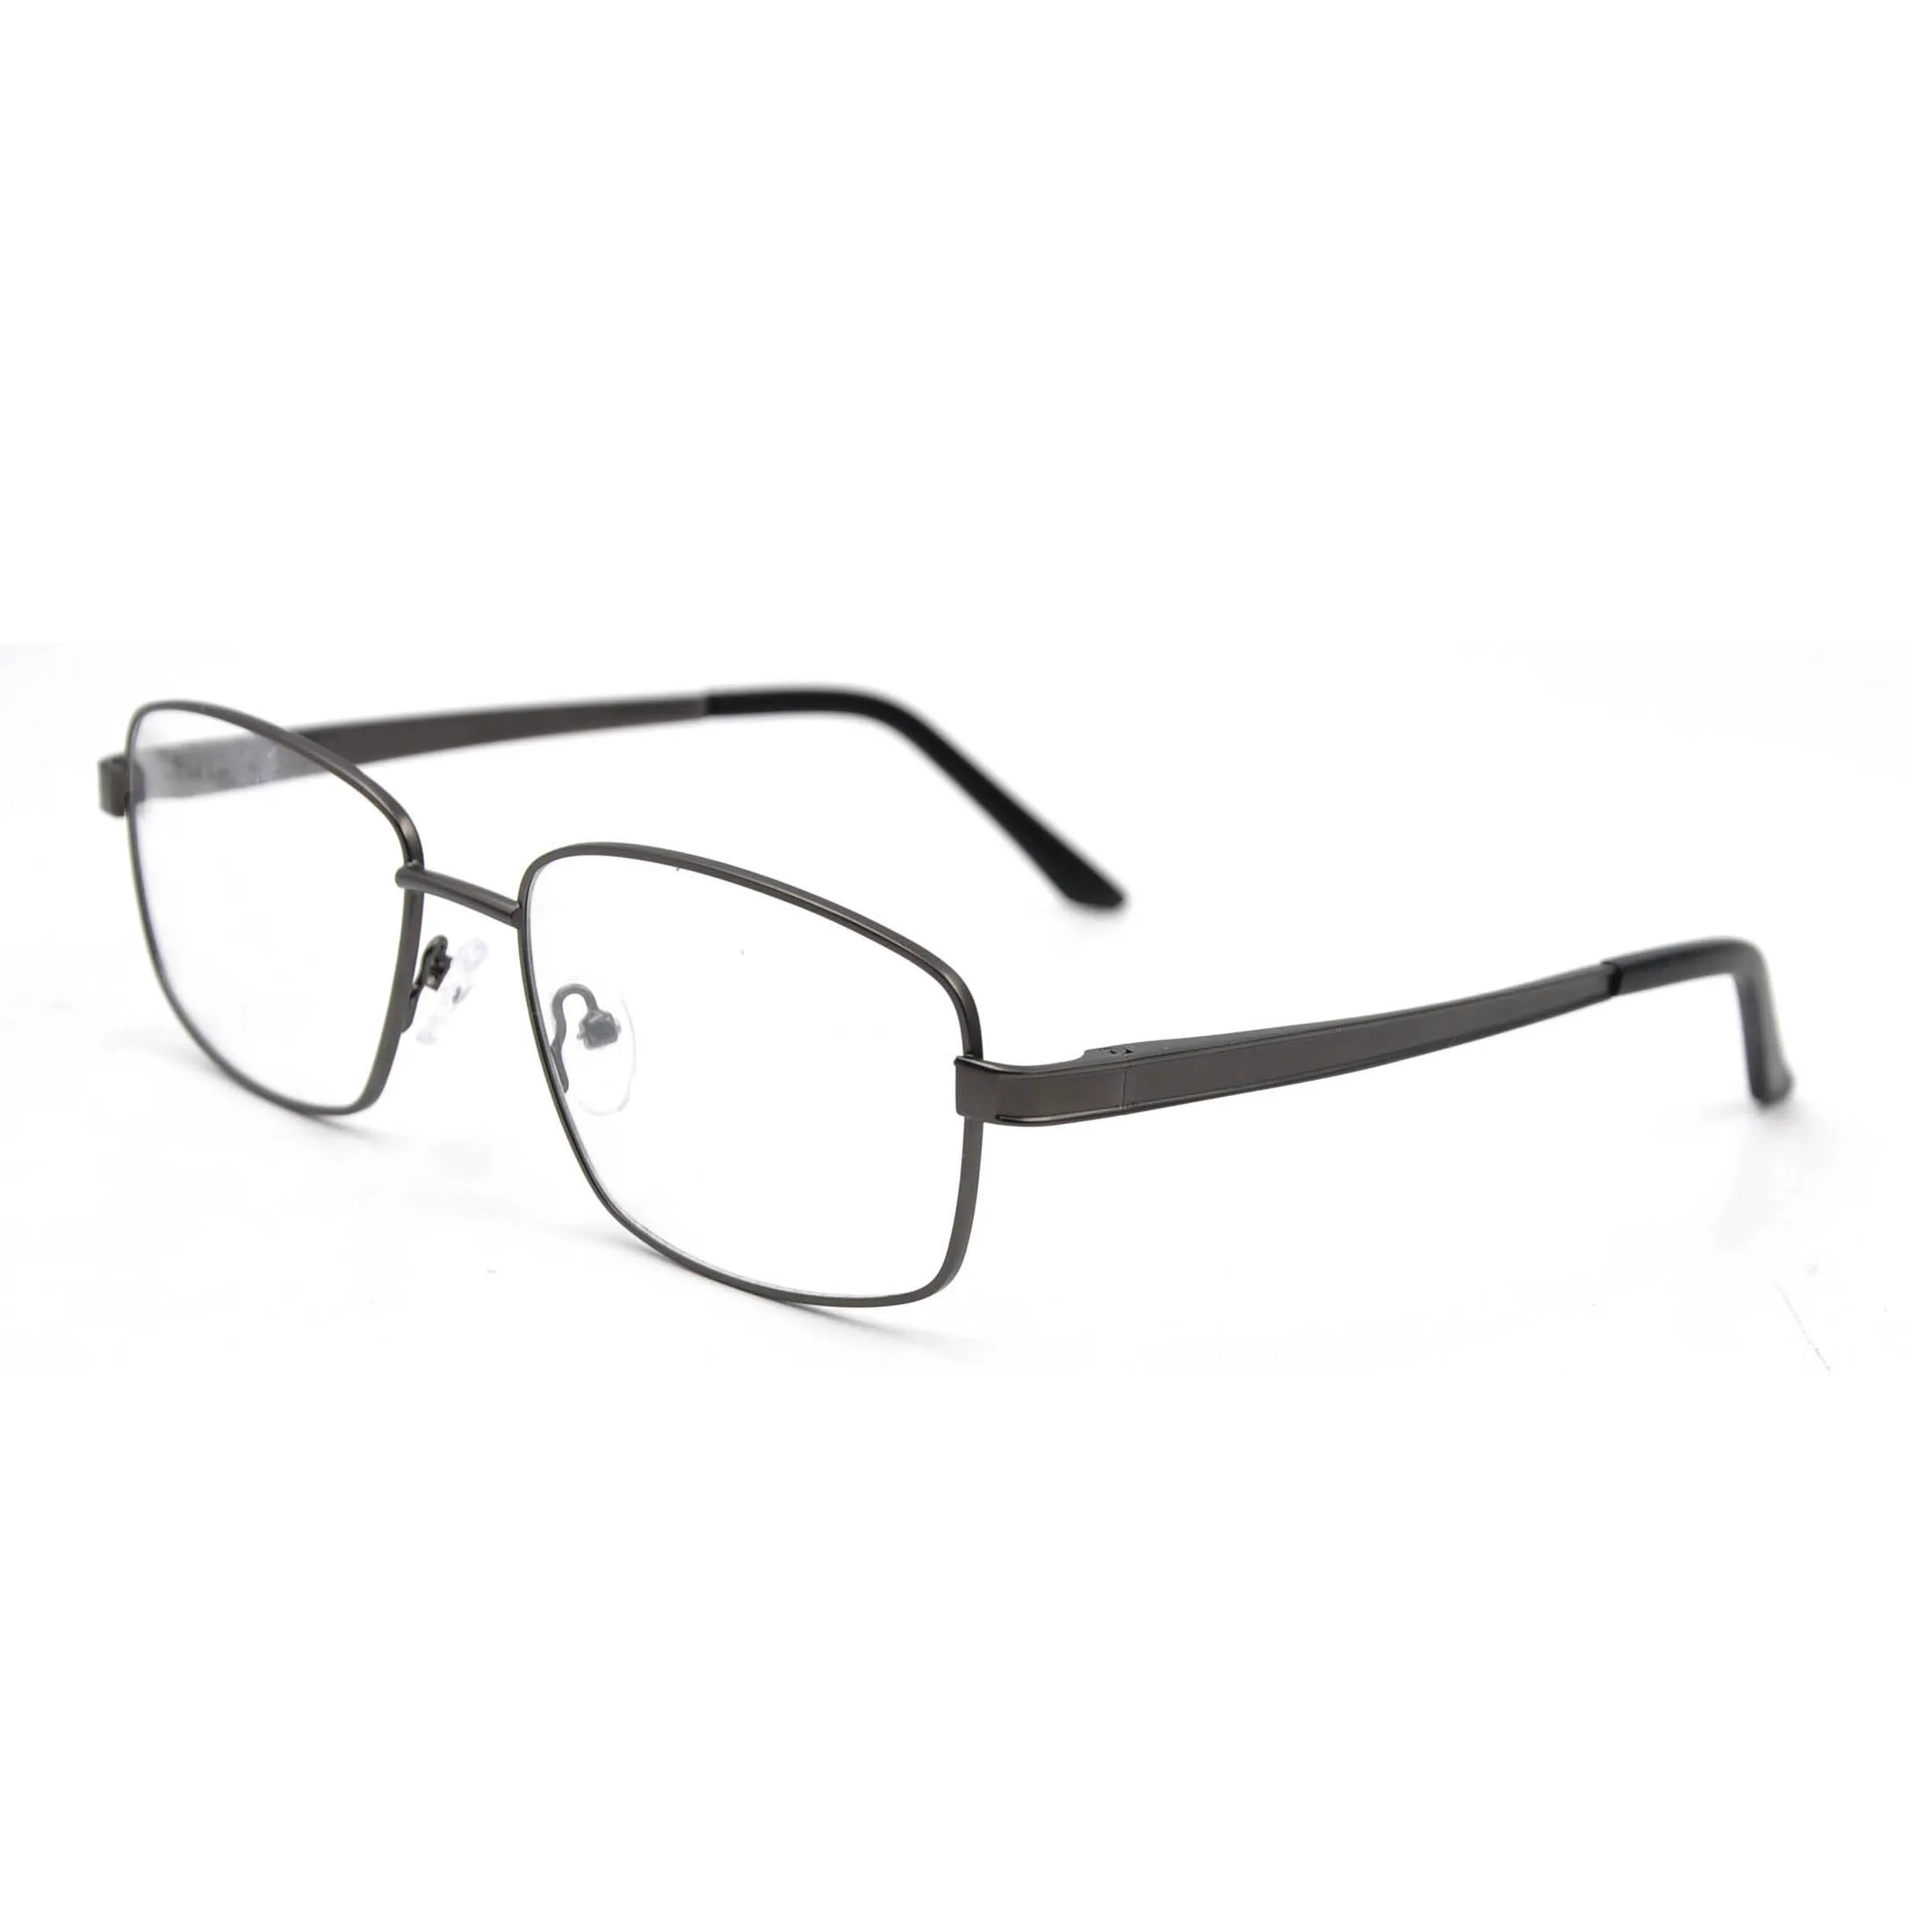 

Wenzhou Higo eyewear new model eyeglass frames wholesale metal optical frame manufacturers in China